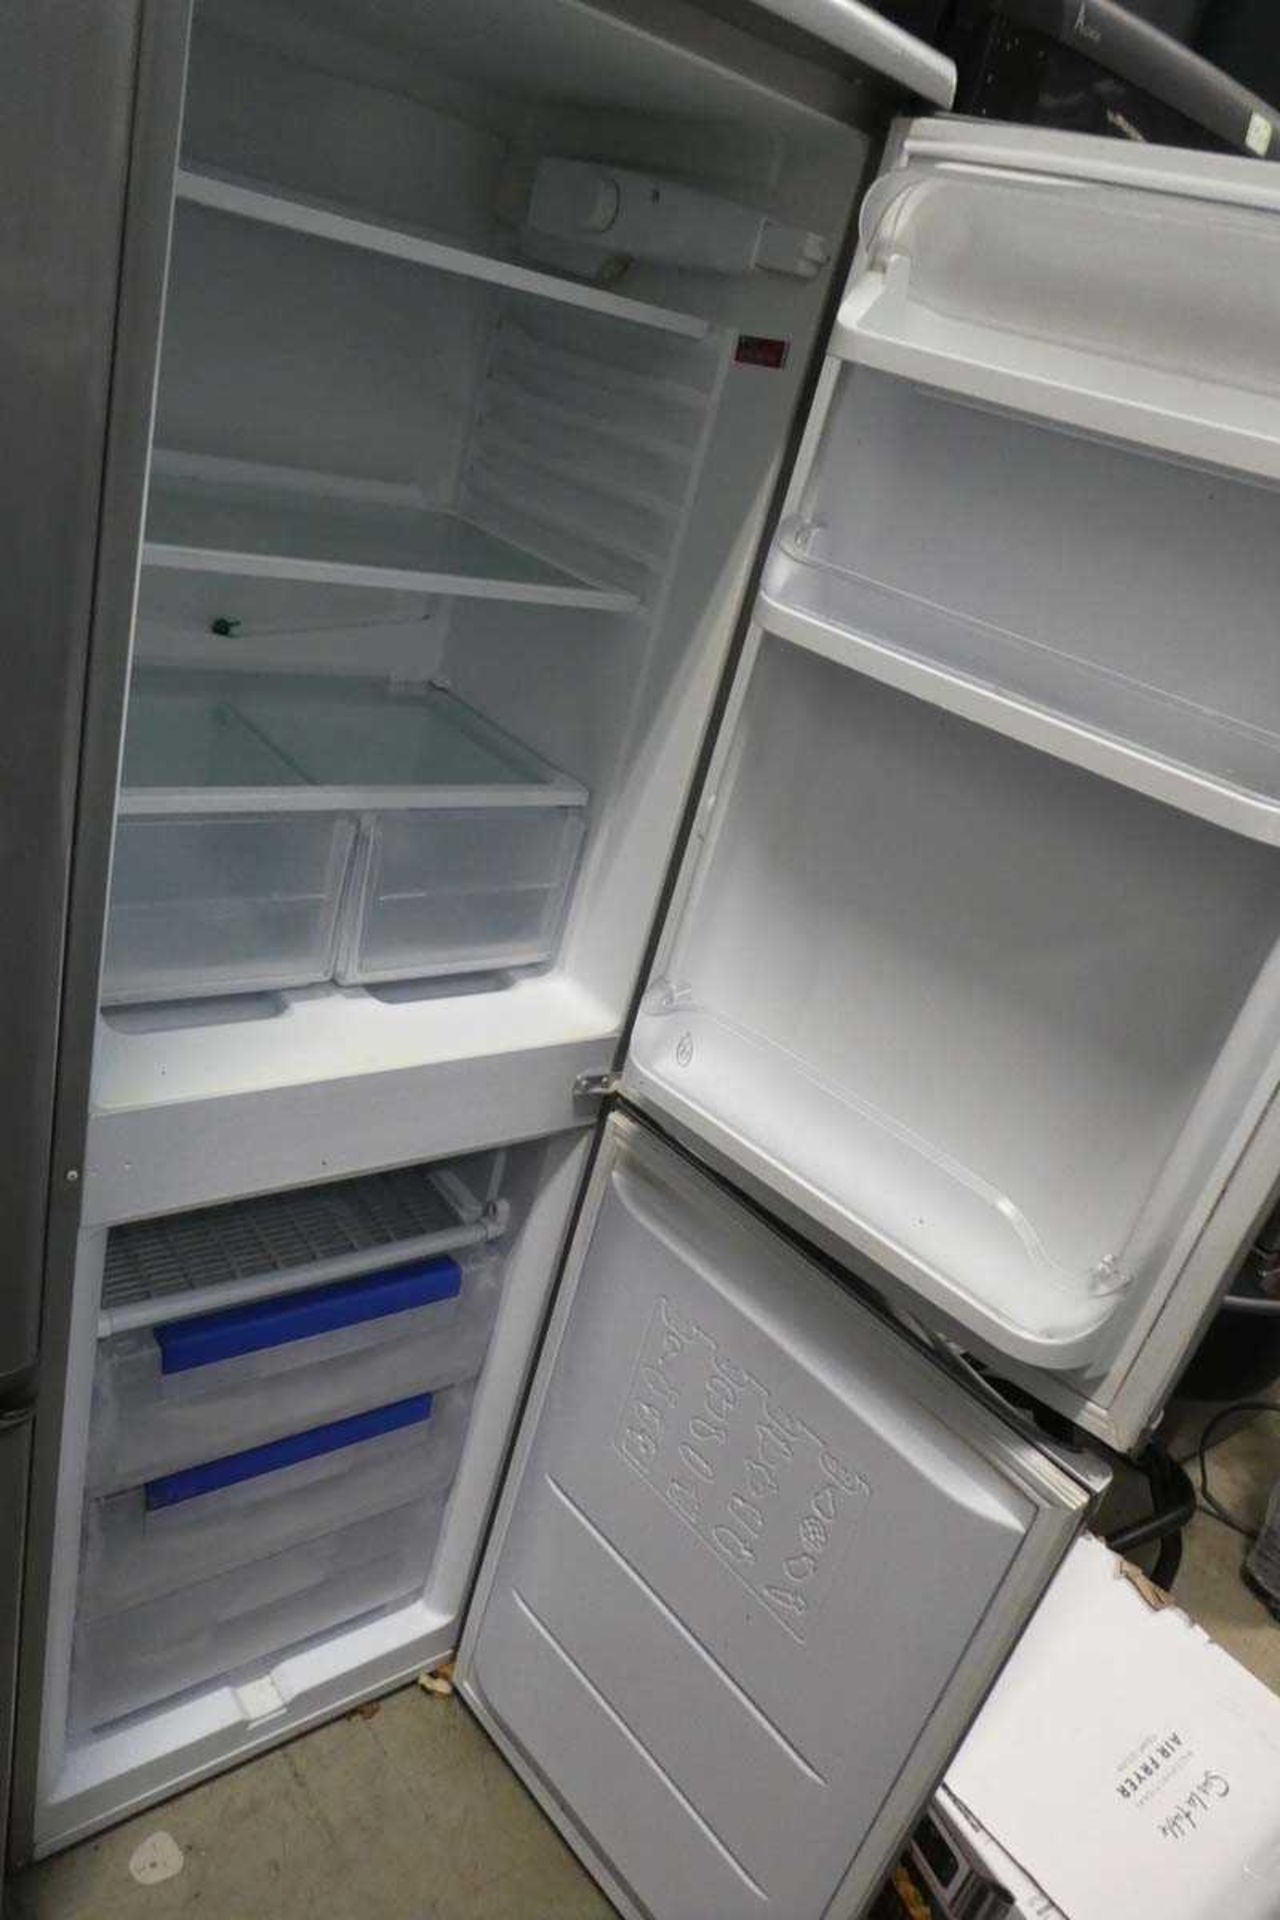 Silver Hotpoint fridge freezer - Image 2 of 2